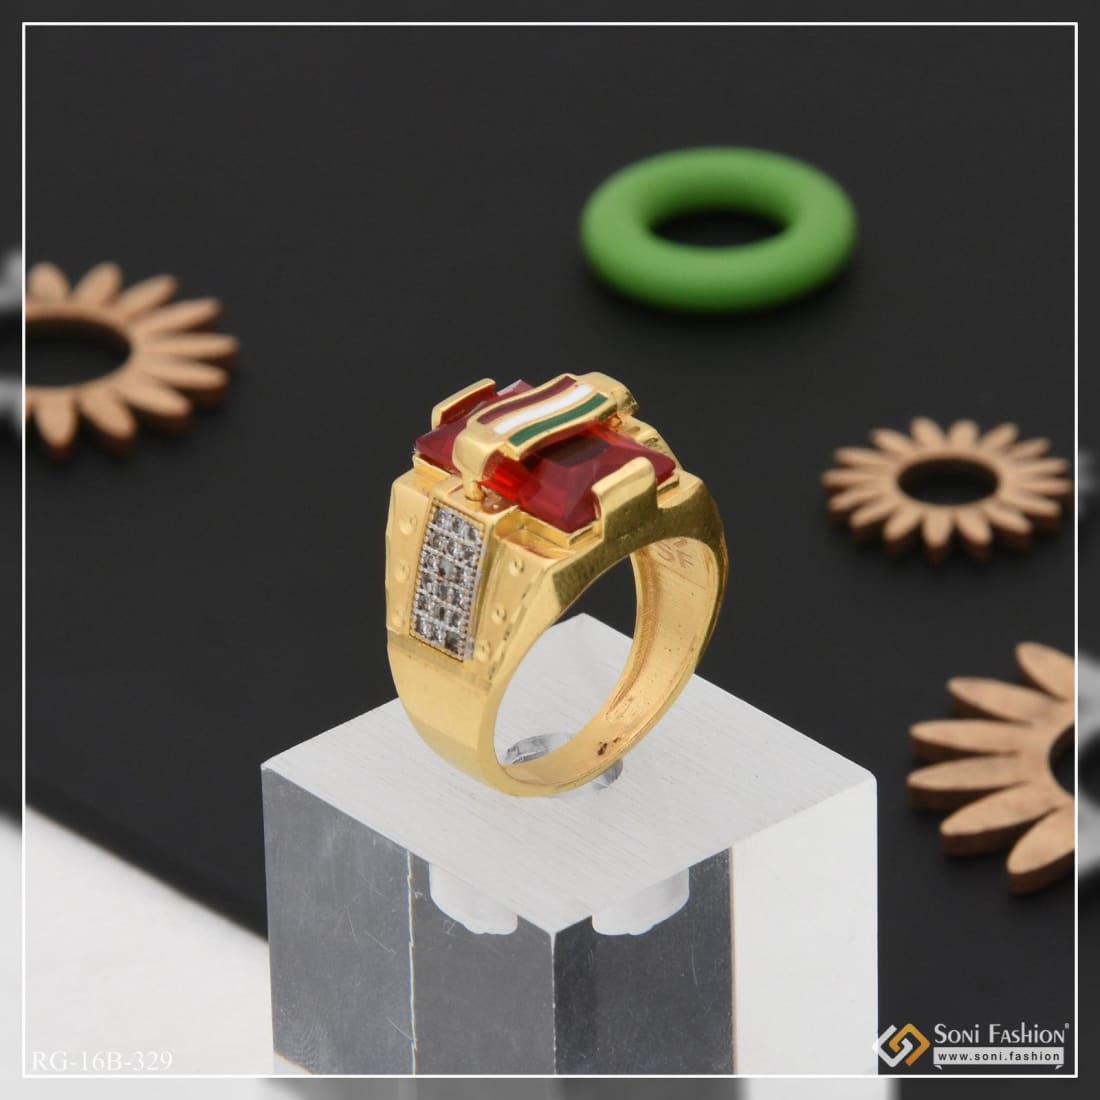 MENDEL Mens Gold Plated Christian Cross Green CZ Stone Ring For Men Size 7  8-15 | eBay